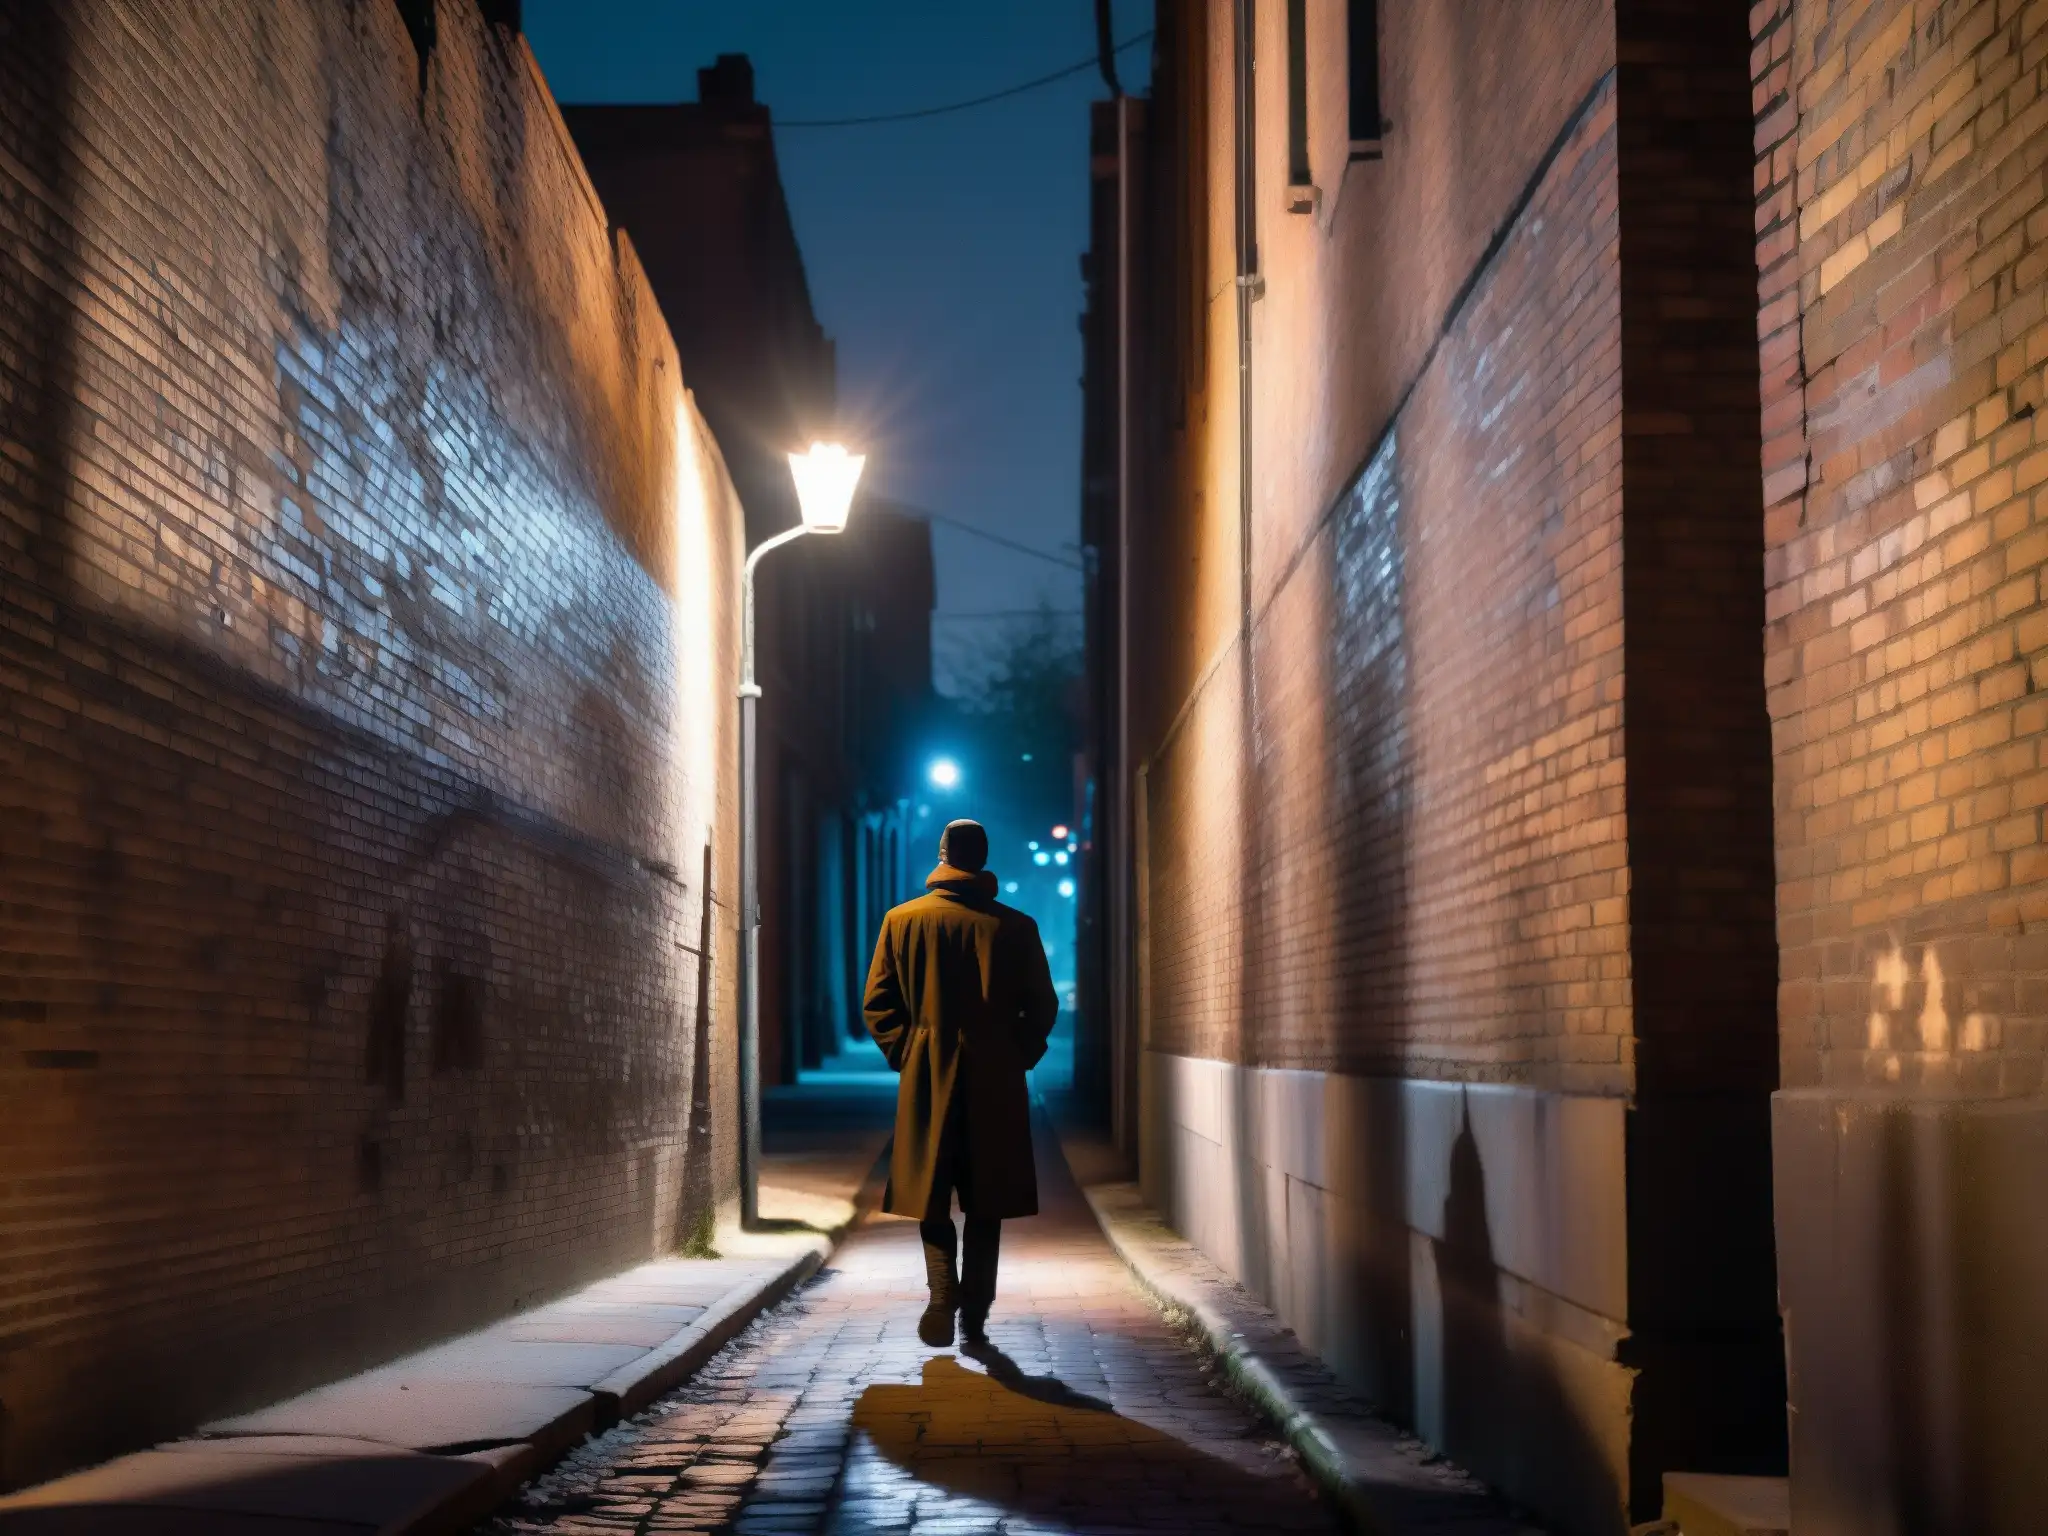 Un callejón urbano sombrío y misterioso de noche, con una luz de la calle parpadeante y sombras alargadas